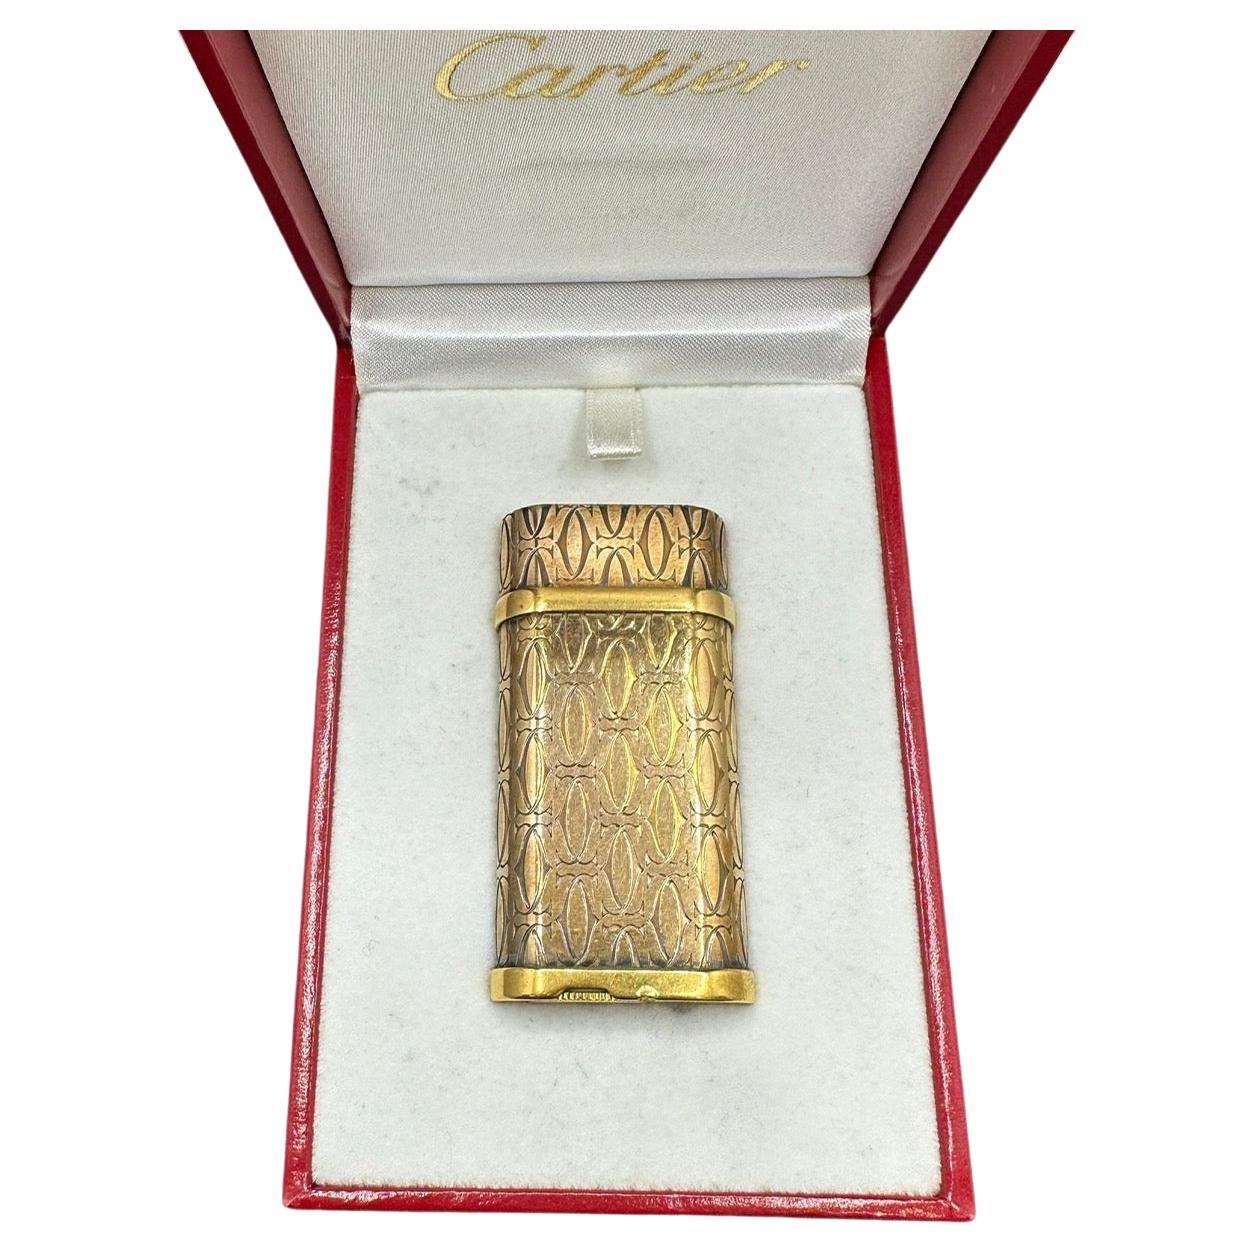 Le Must de Cartier Logo 18k vergoldetes, seltenes Retro-Logo-Leuchter